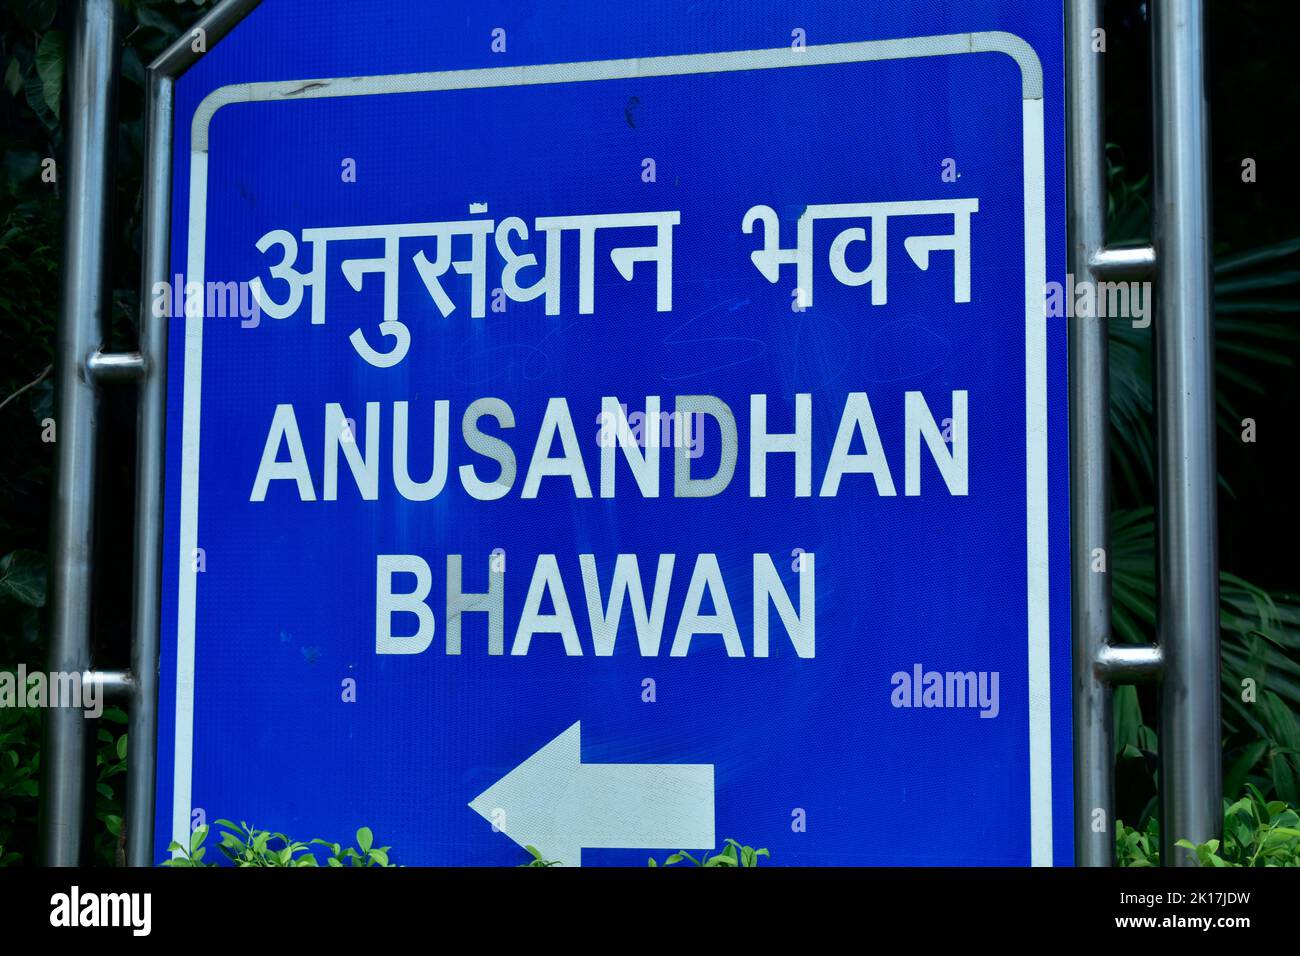 New Delhi, India - 14 September 2022 : Anusandhan bhawan sign board at new delhi, india Stock Photo